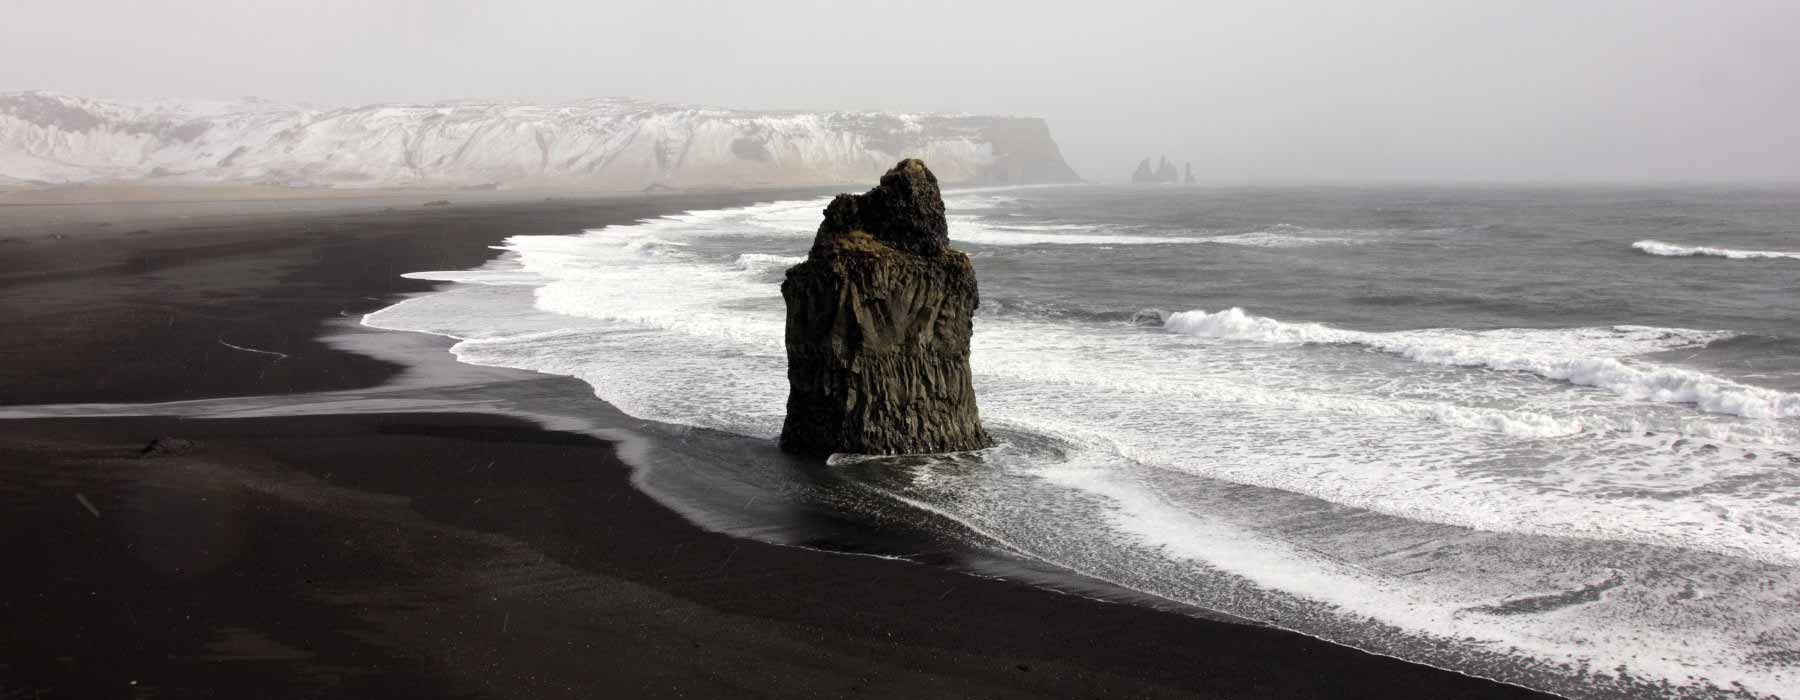 All our Iceland<br class="hidden-md hidden-lg" /> Winter Holidays